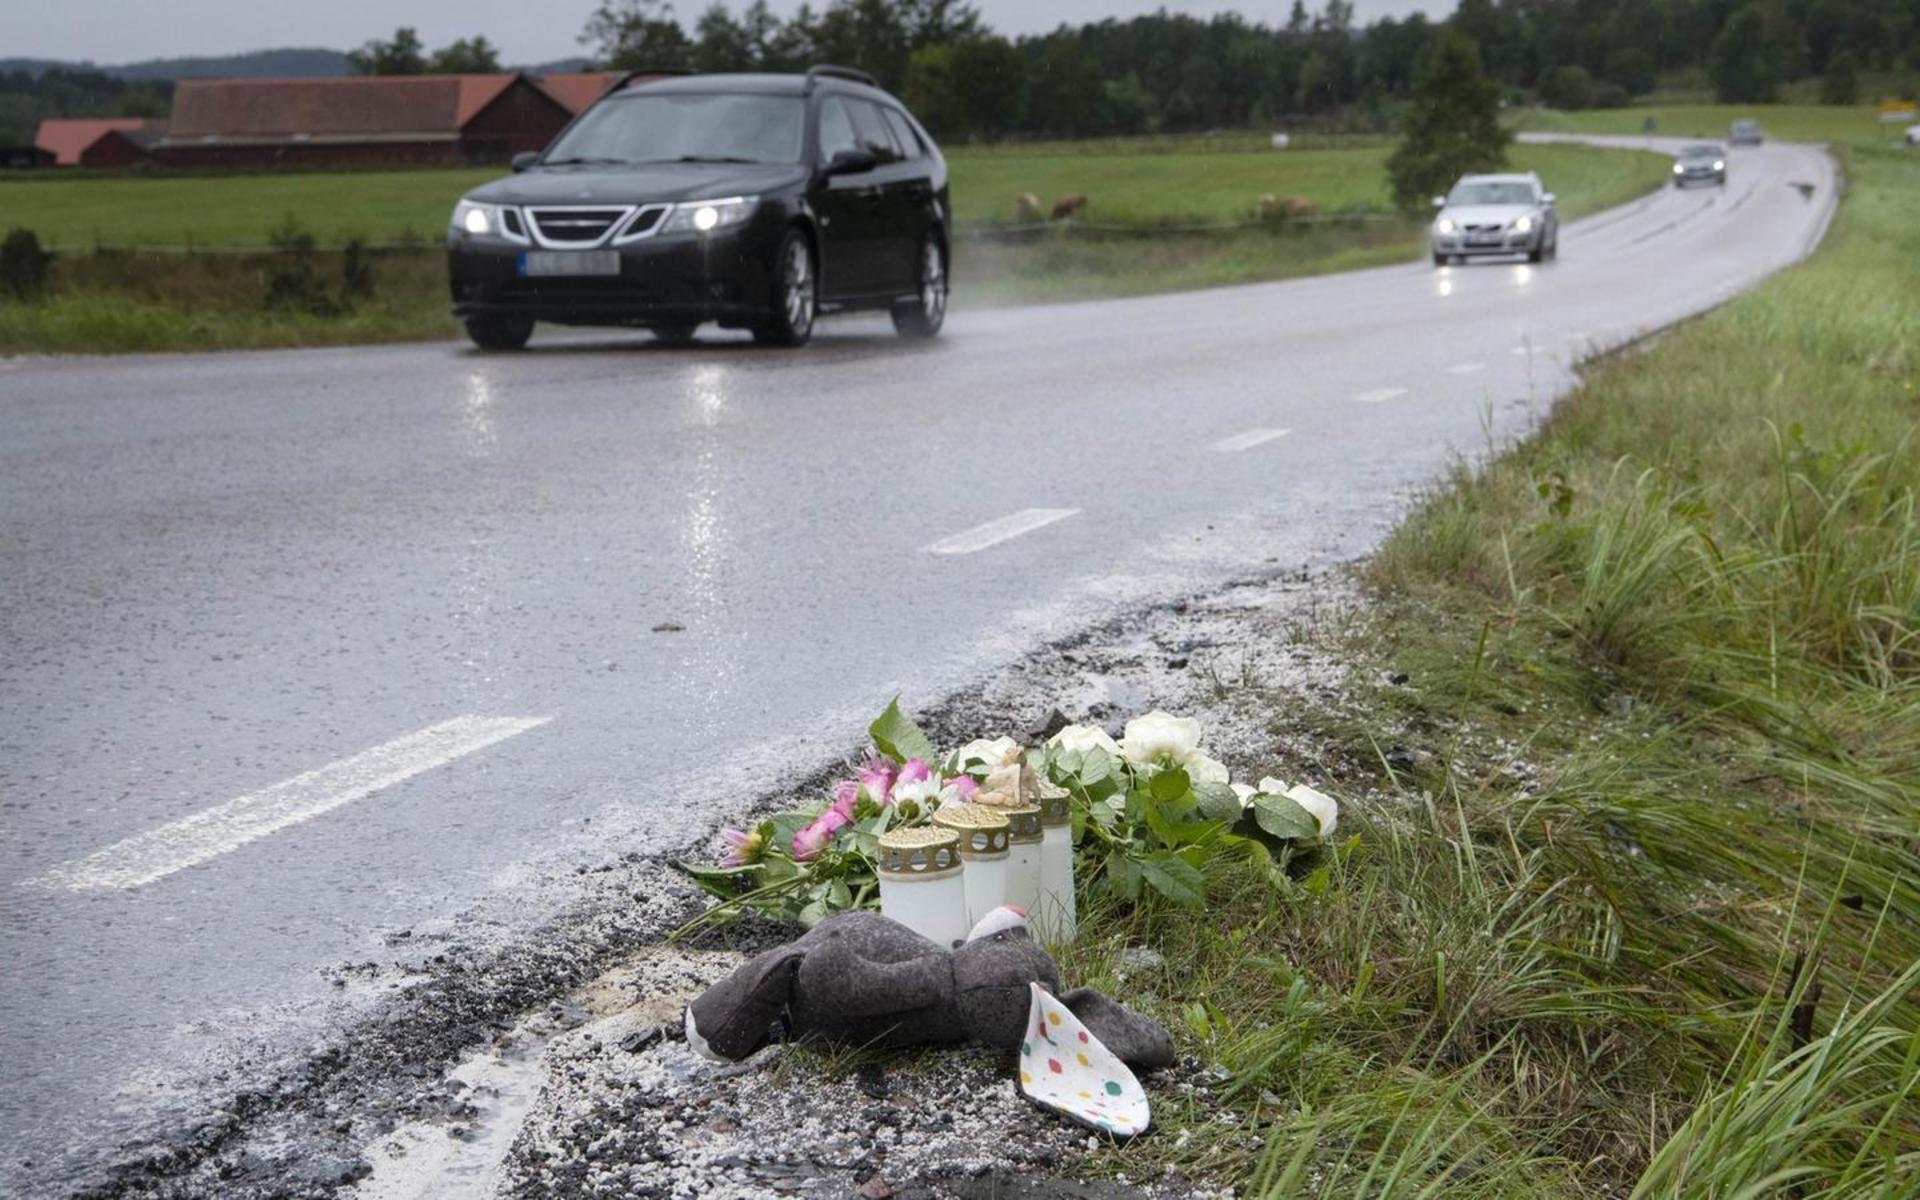 Det var på torsdagskvällen den 27 augusti som dödsolyckan inträffade på vägen mellan Oskarström och Slättåkra. Fem personer var inblandade i olyckan. Två av dem, en flicka i femårsåldern och en kvinna i 60-årsåldern, avled av sina skador. 